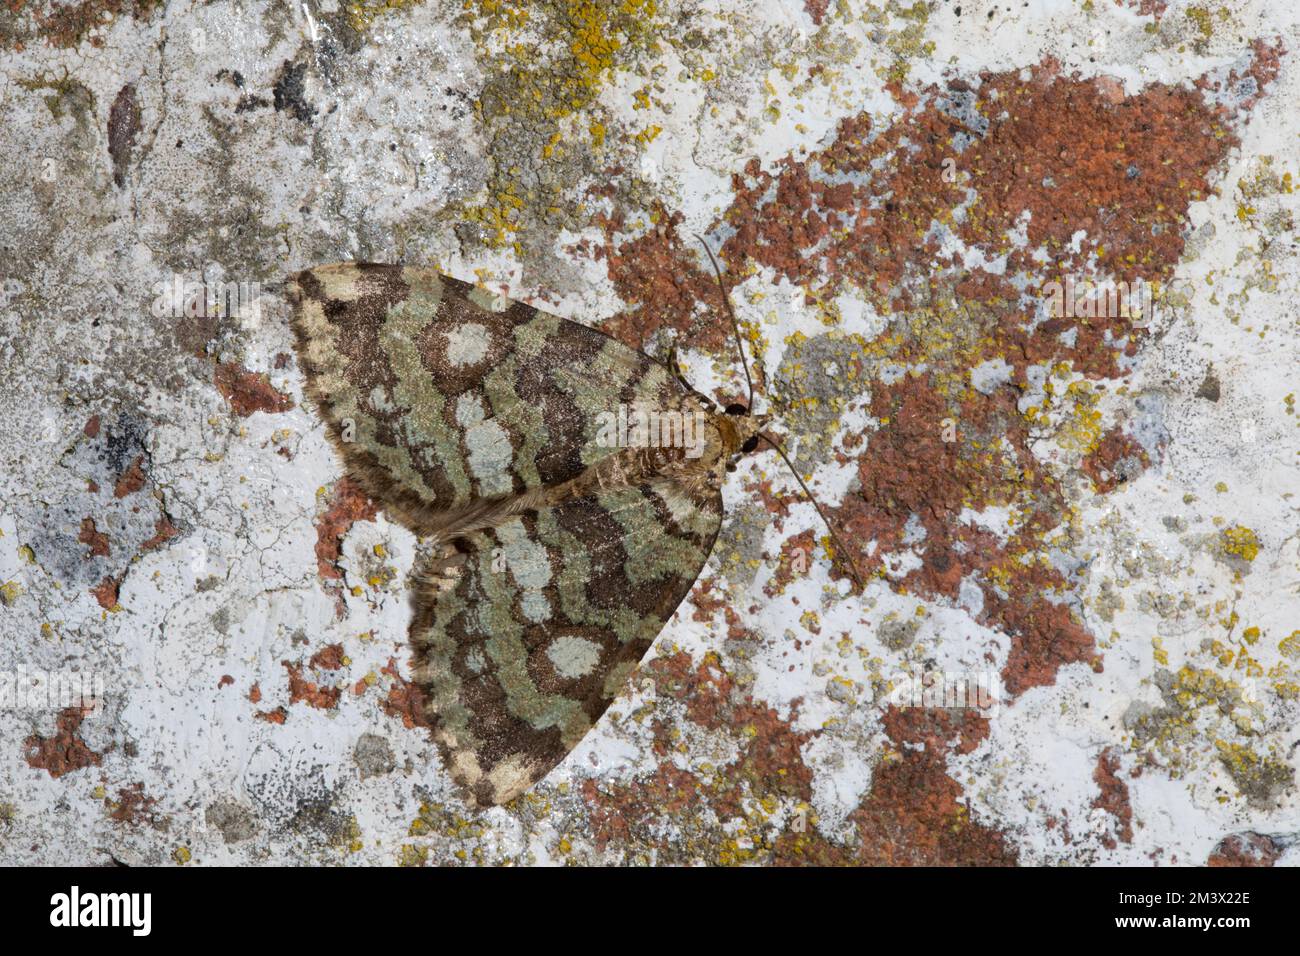 Juillet Highflyer Moth (Hydriomena furcata) reposant sur un mur de briques. Powys, pays de Galles. Août. Banque D'Images